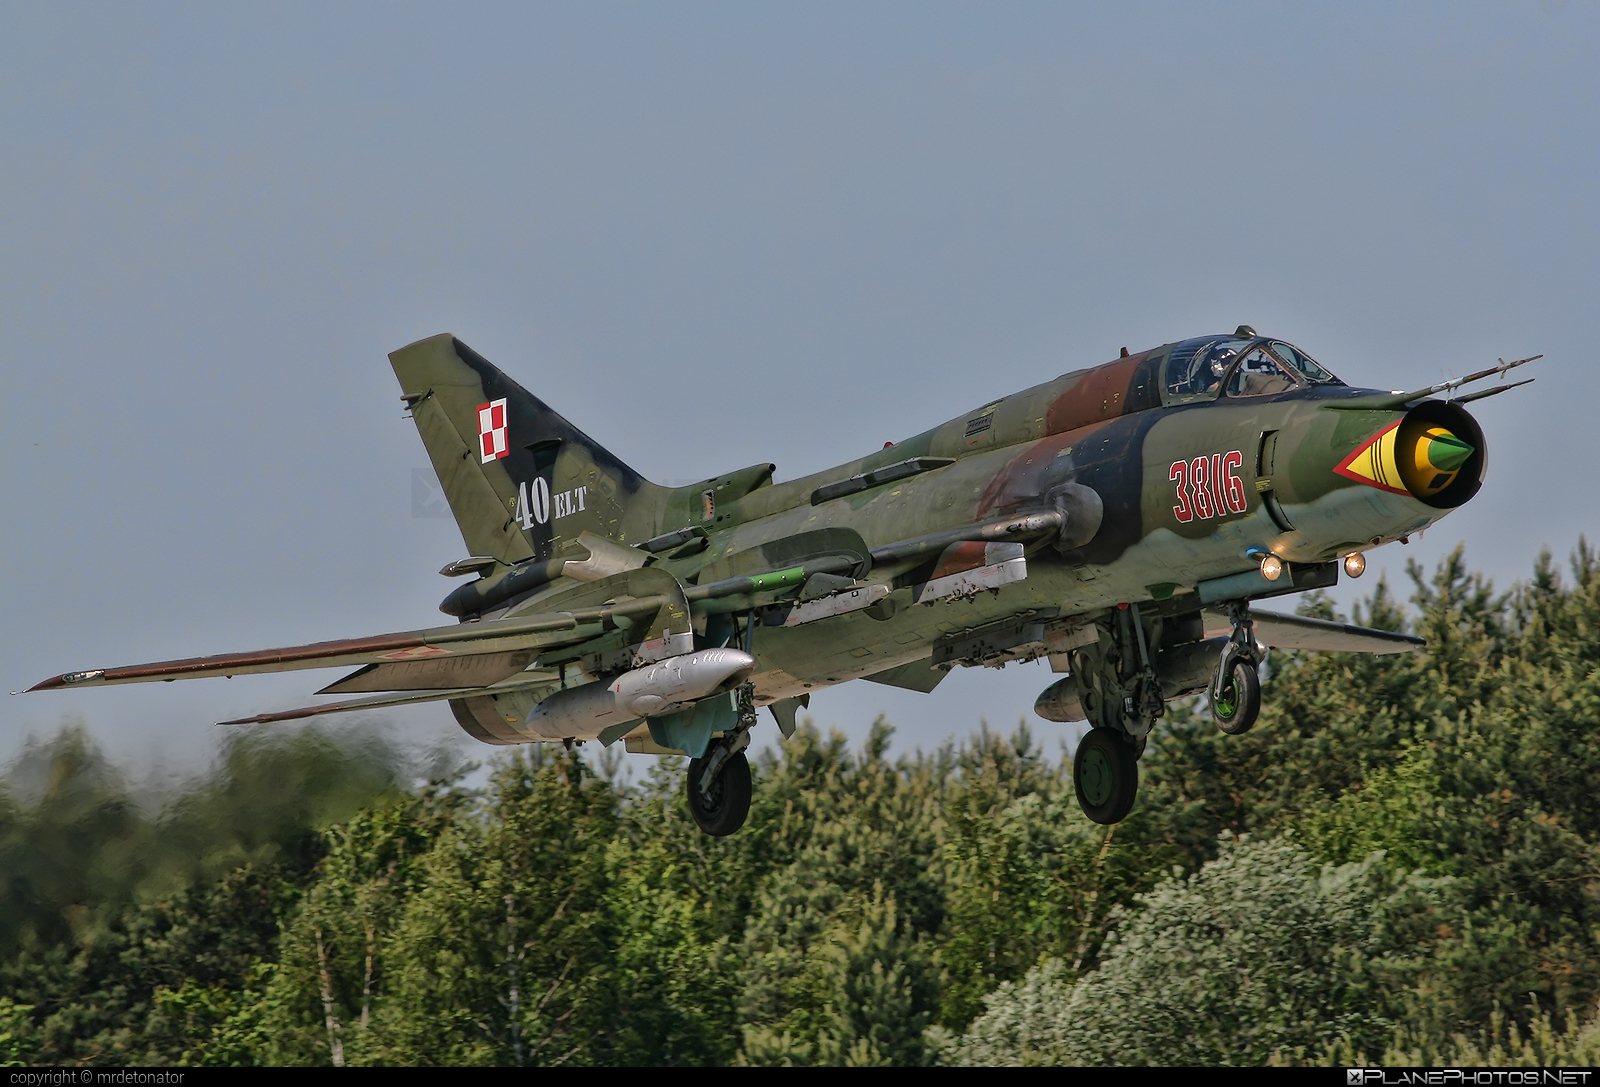 Sukhoi Su-22M4 - 3816 operated by Siły Powietrzne Rzeczypospolitej Polskiej (Polish Air Force) #polishairforce #silypowietrzne #su22 #su22m4 #sukhoi #sukhoi22 #sukhoi22m4 #sukhoisu22 #sukhoisu22m4